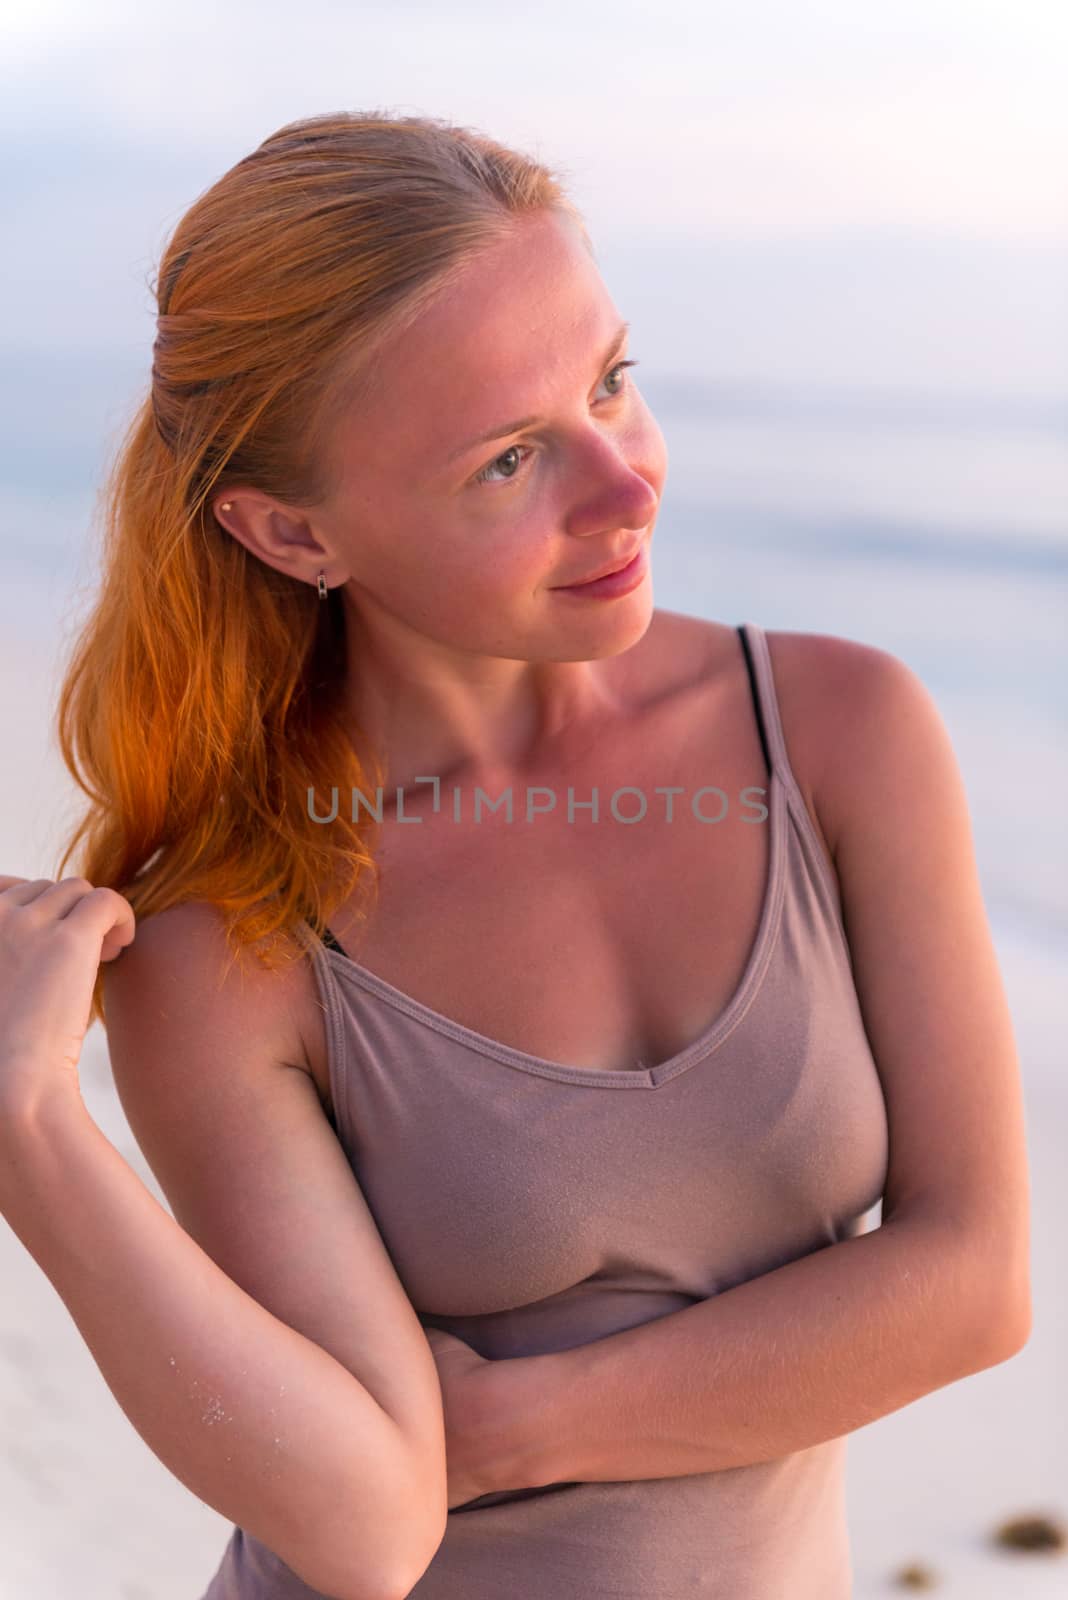 Young woman at the beach by nikitabuida